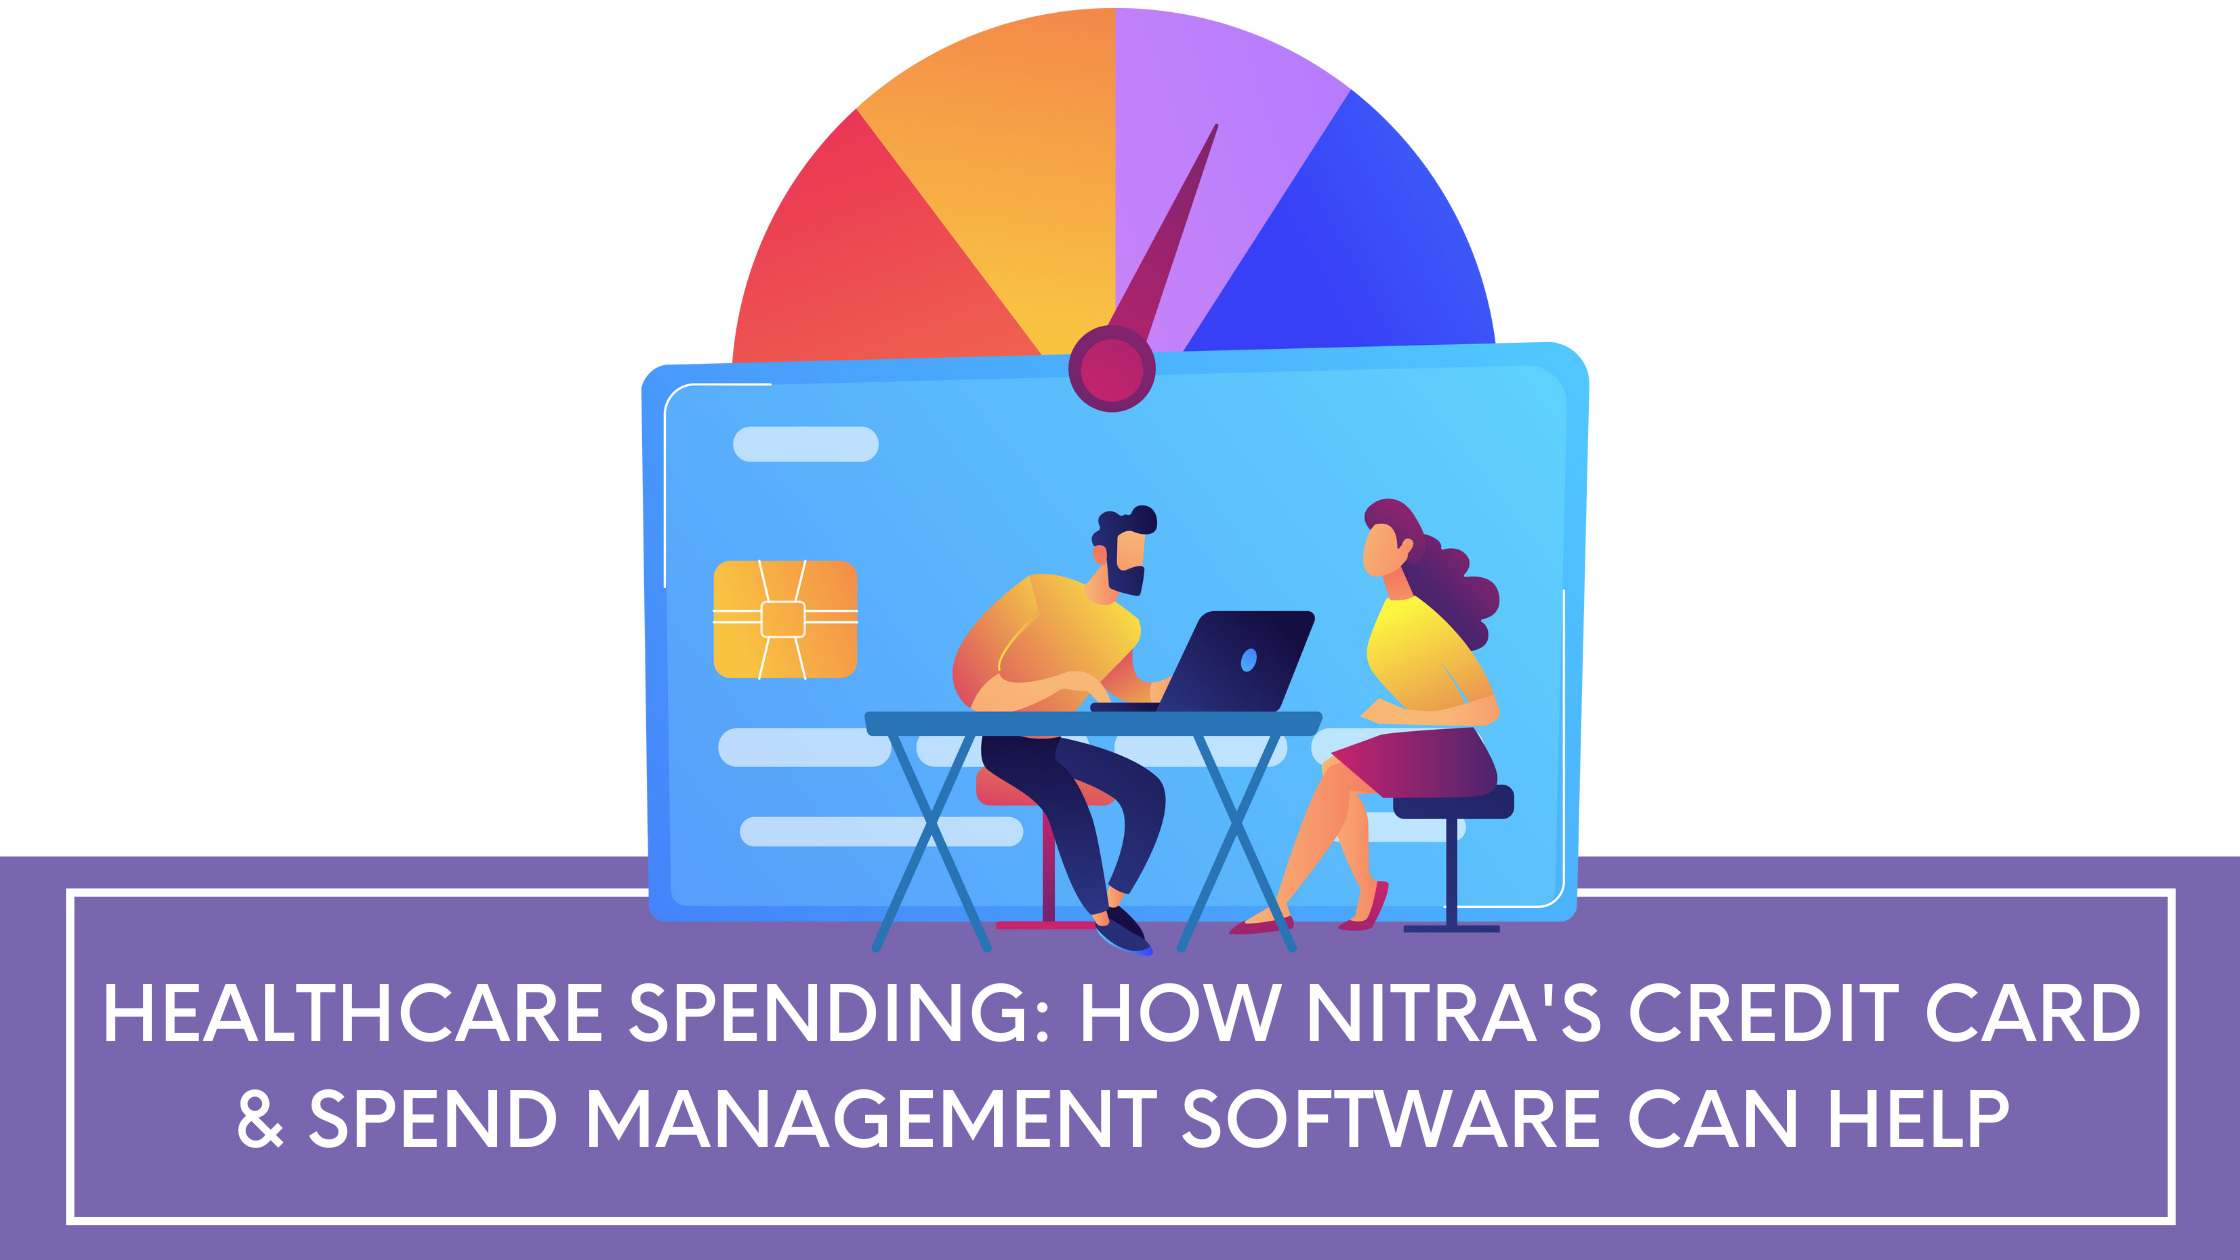 nitra's credit card